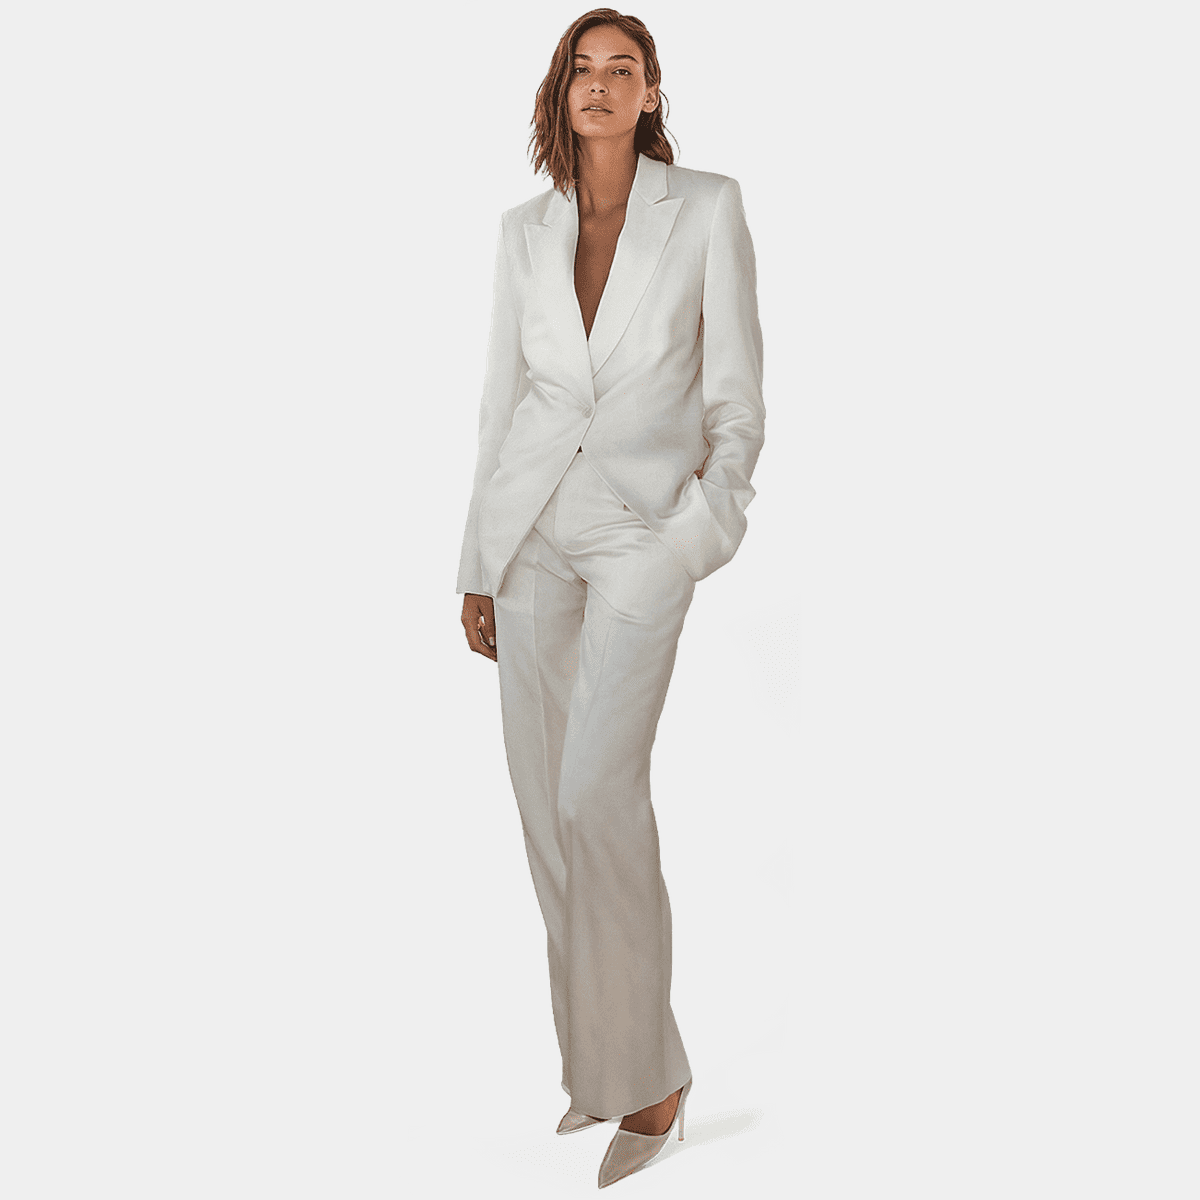 Women's White Suit | Kennedy Blue - Kennedy Blue